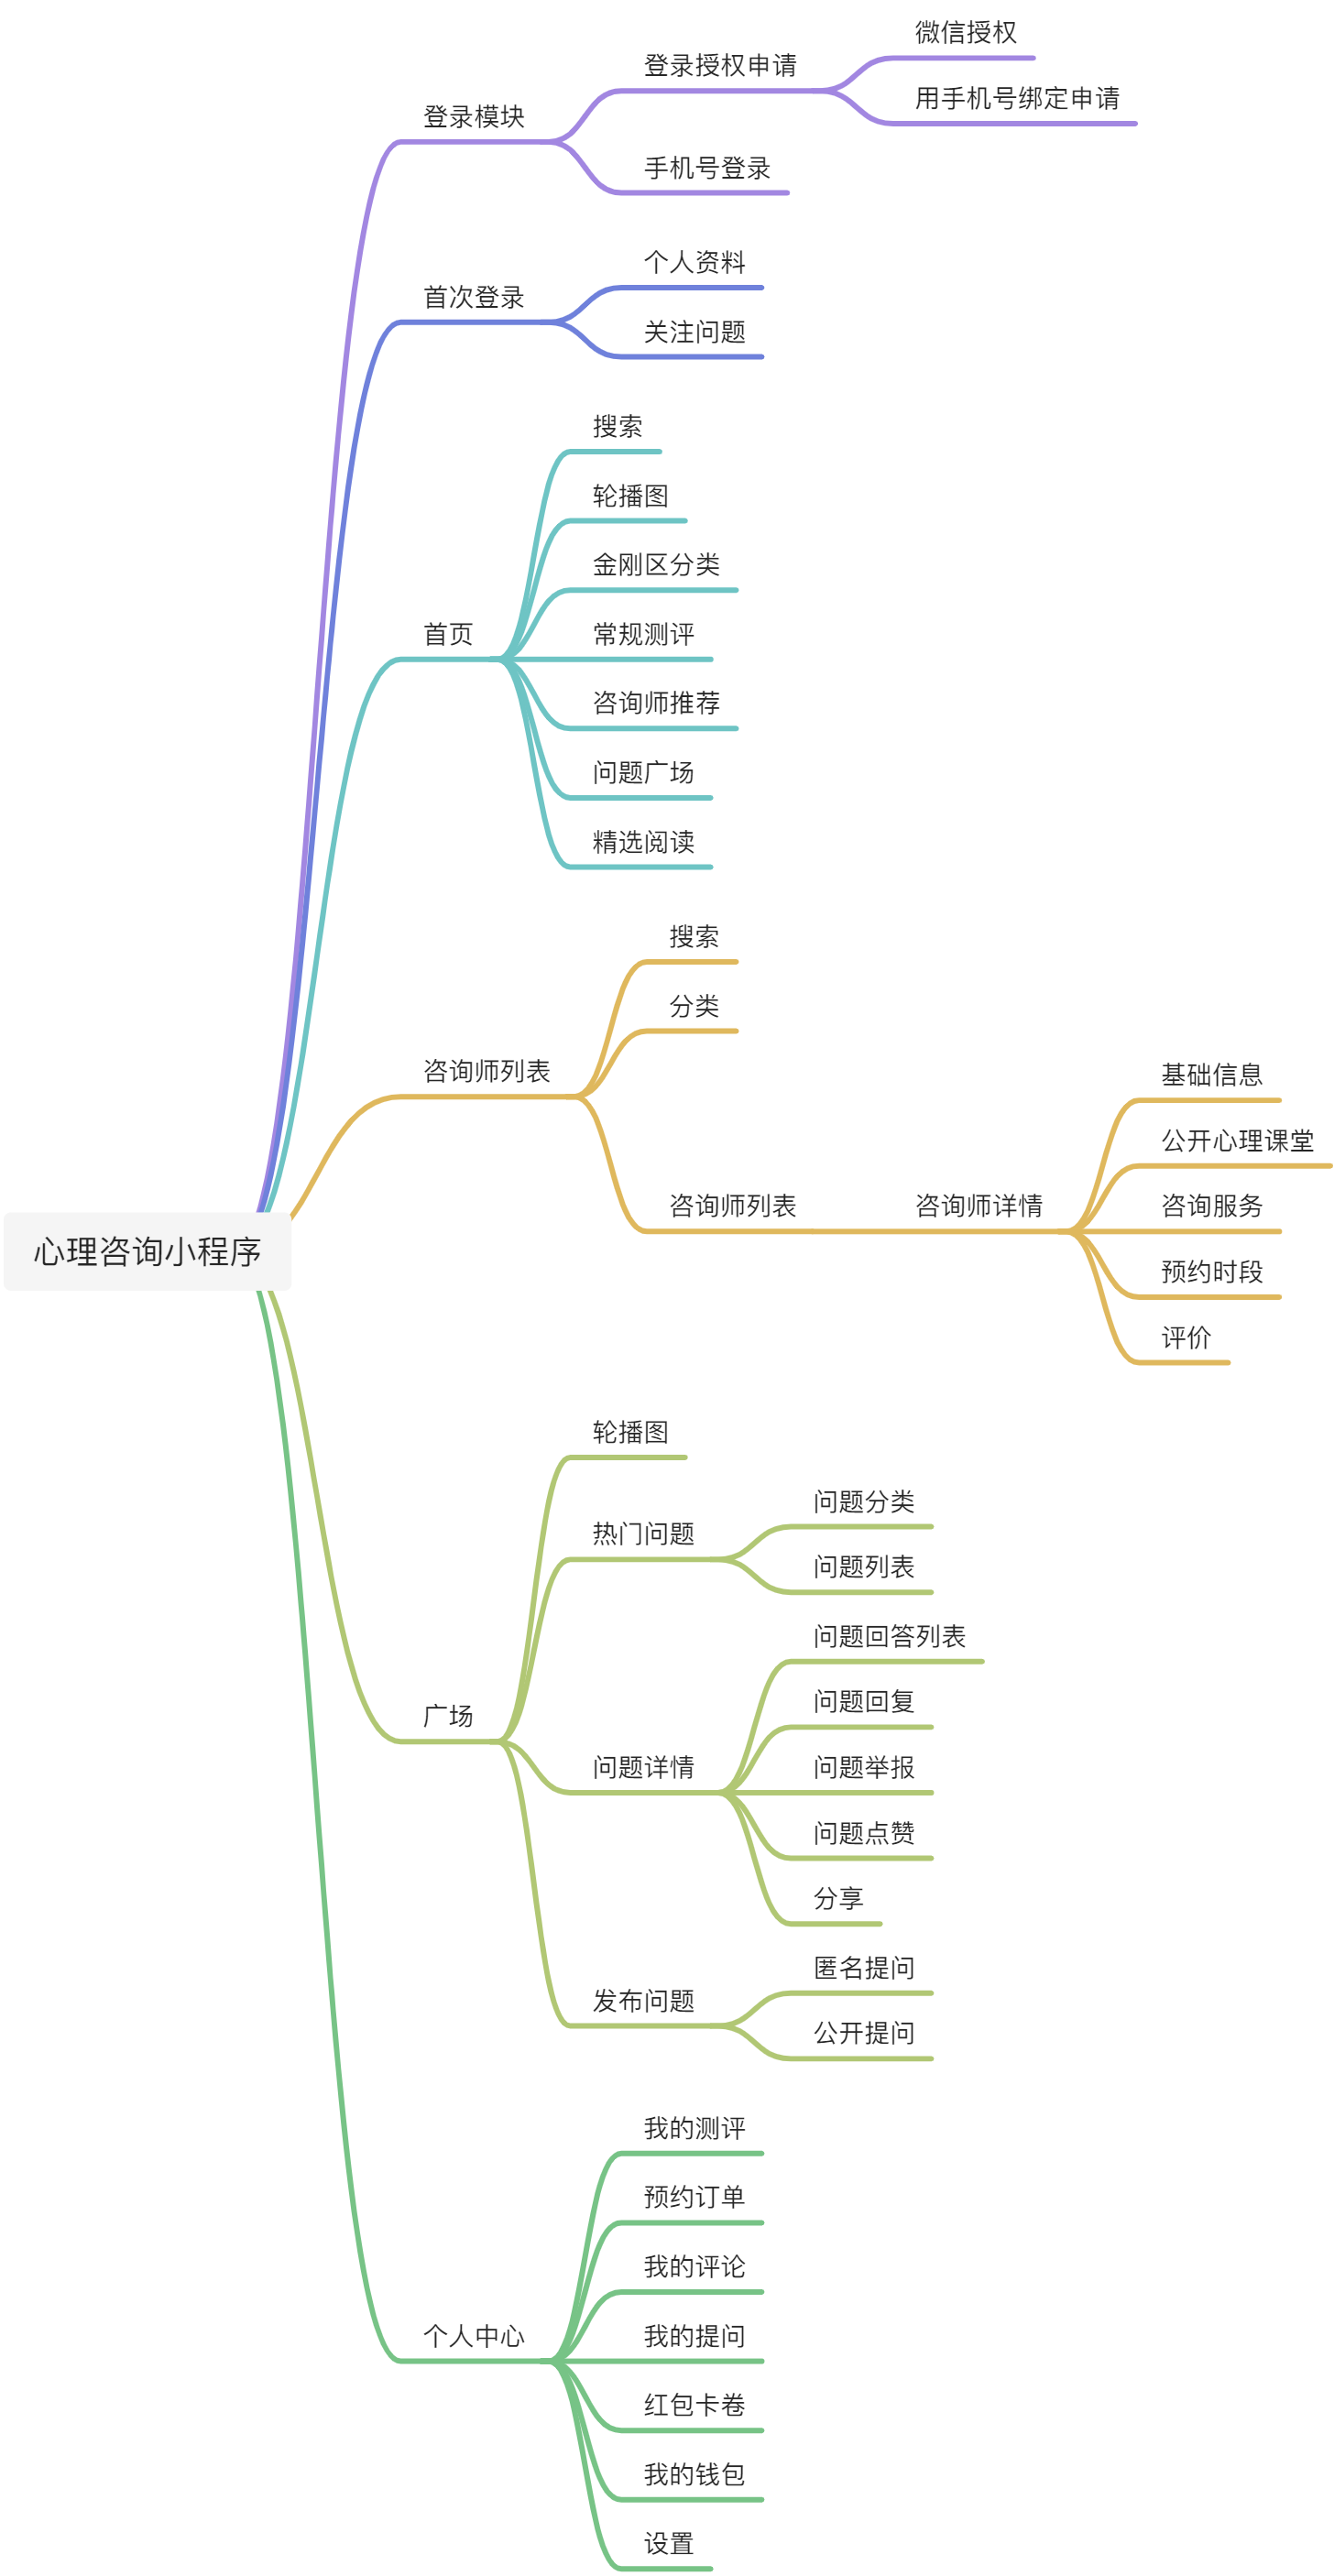 yuque_diagram.jpg